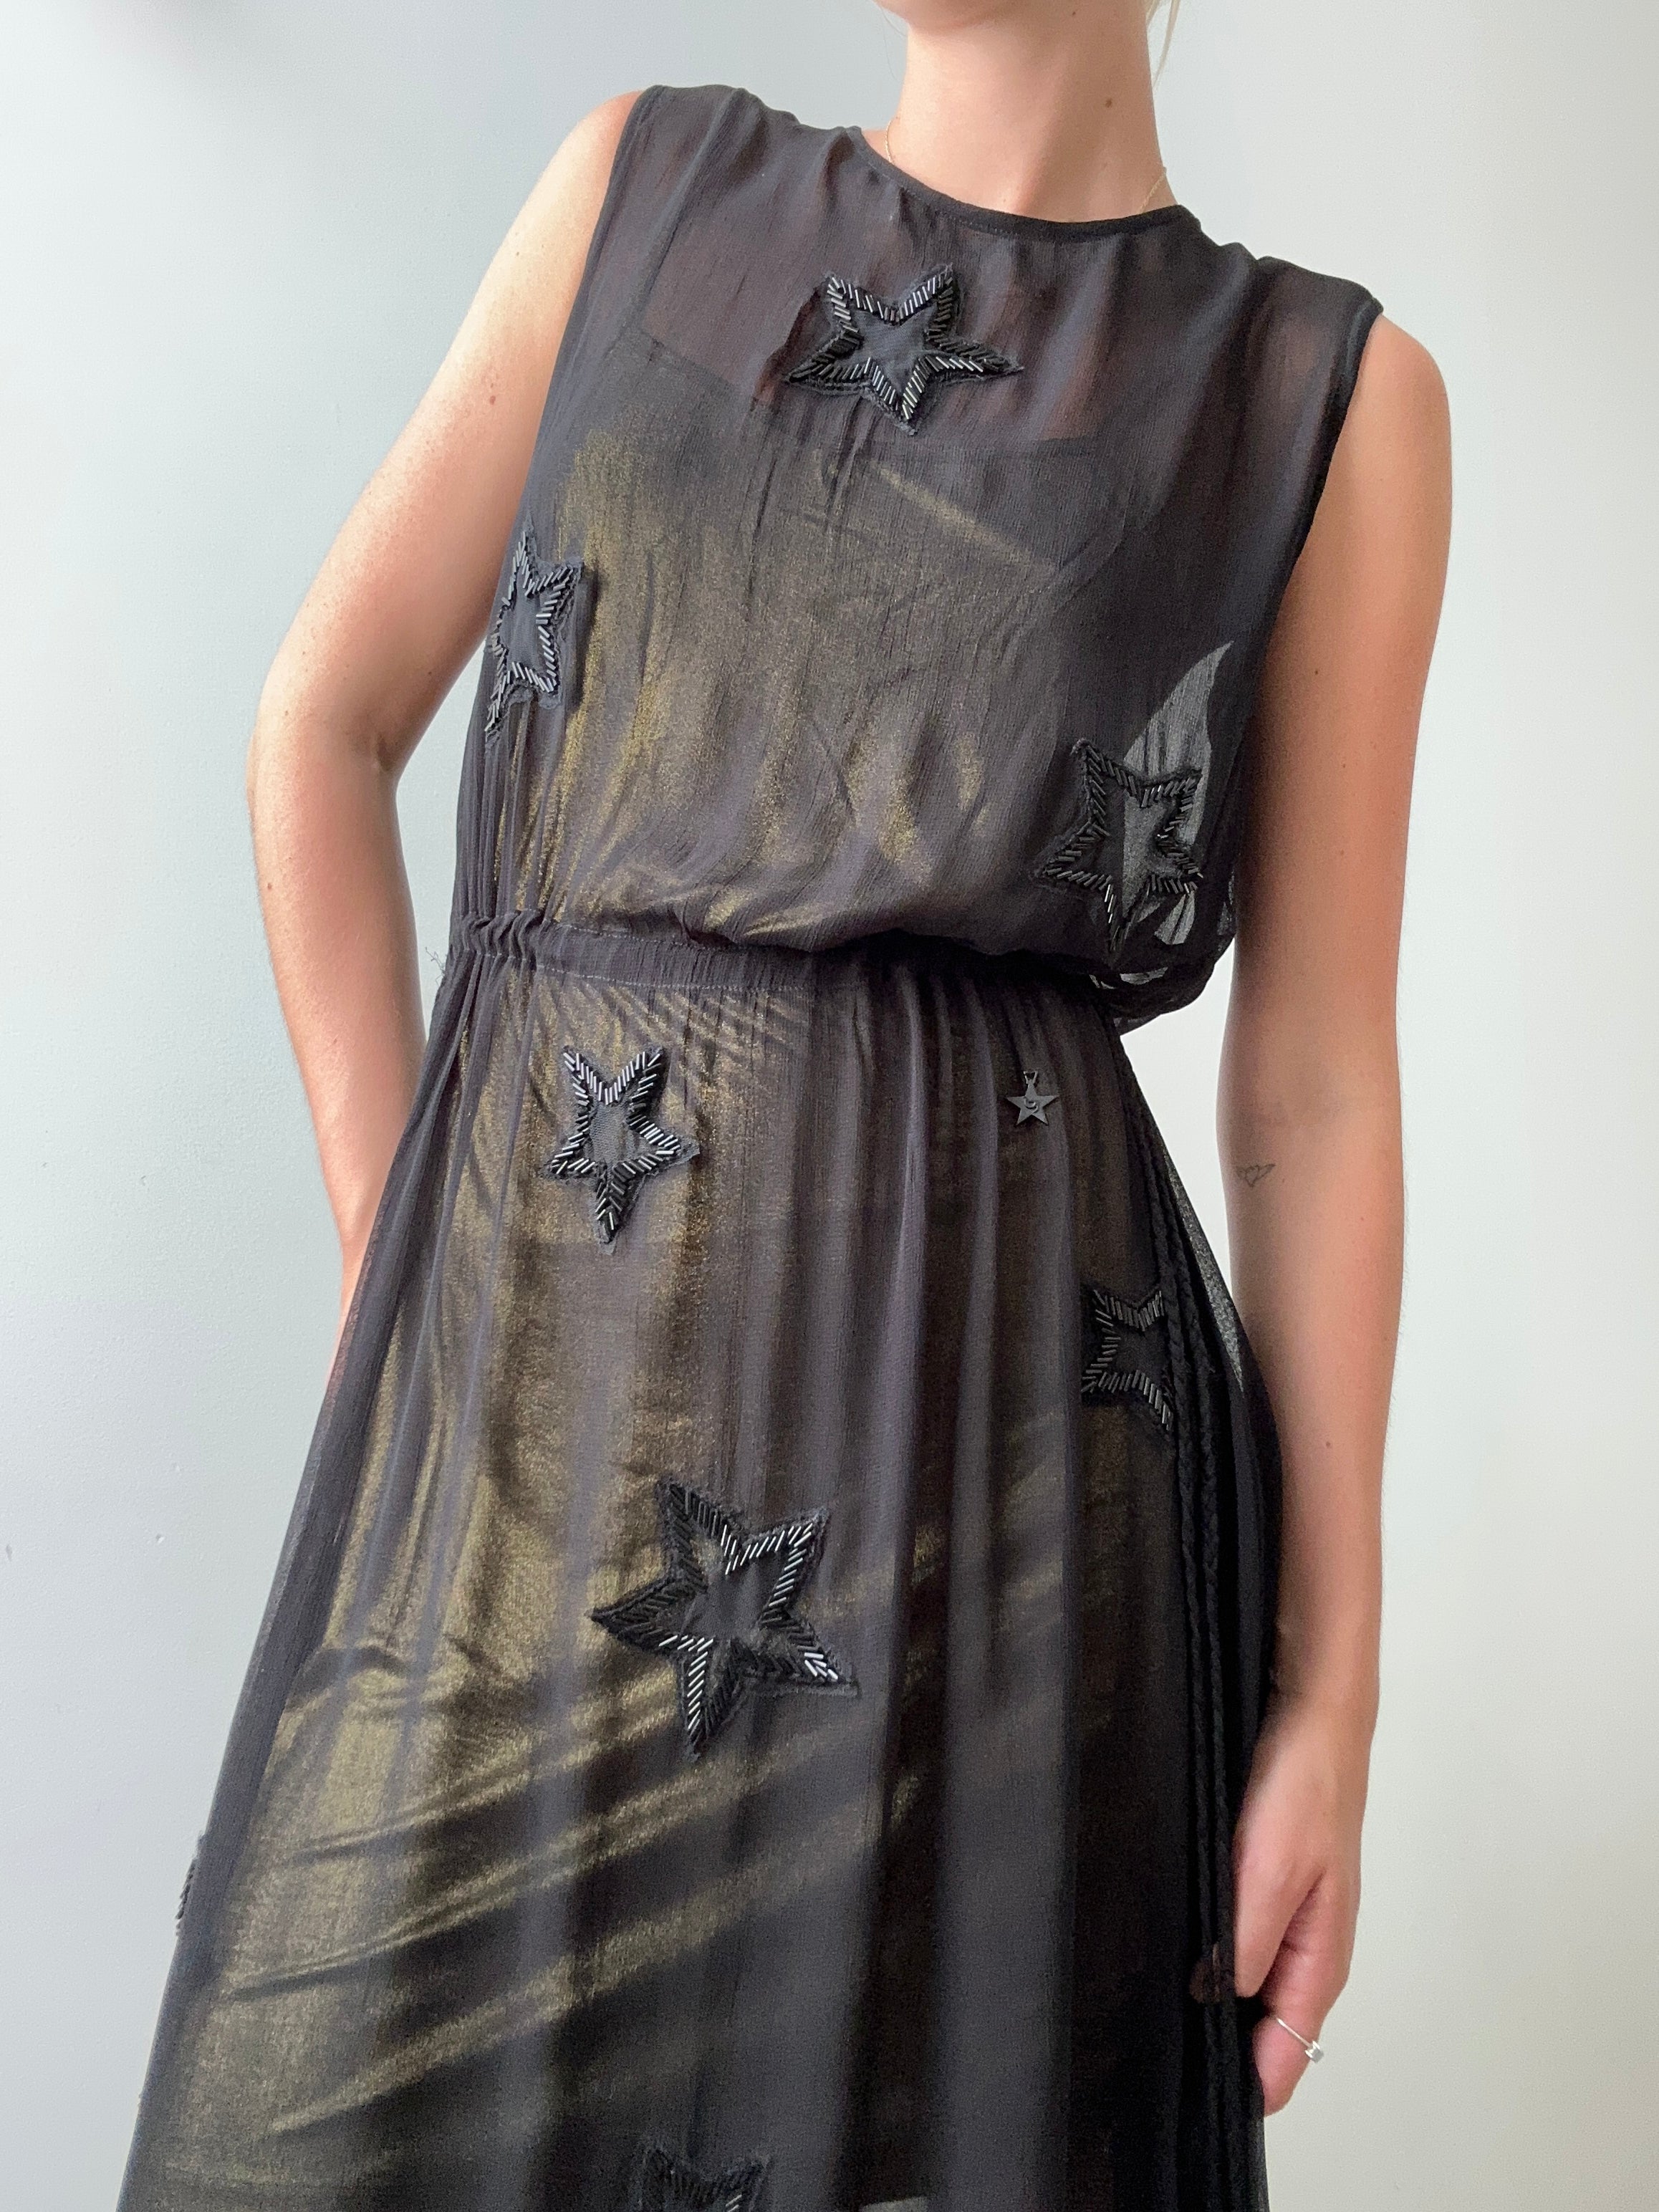 ByBlos Dresses ByBlos Star Sequin Dress